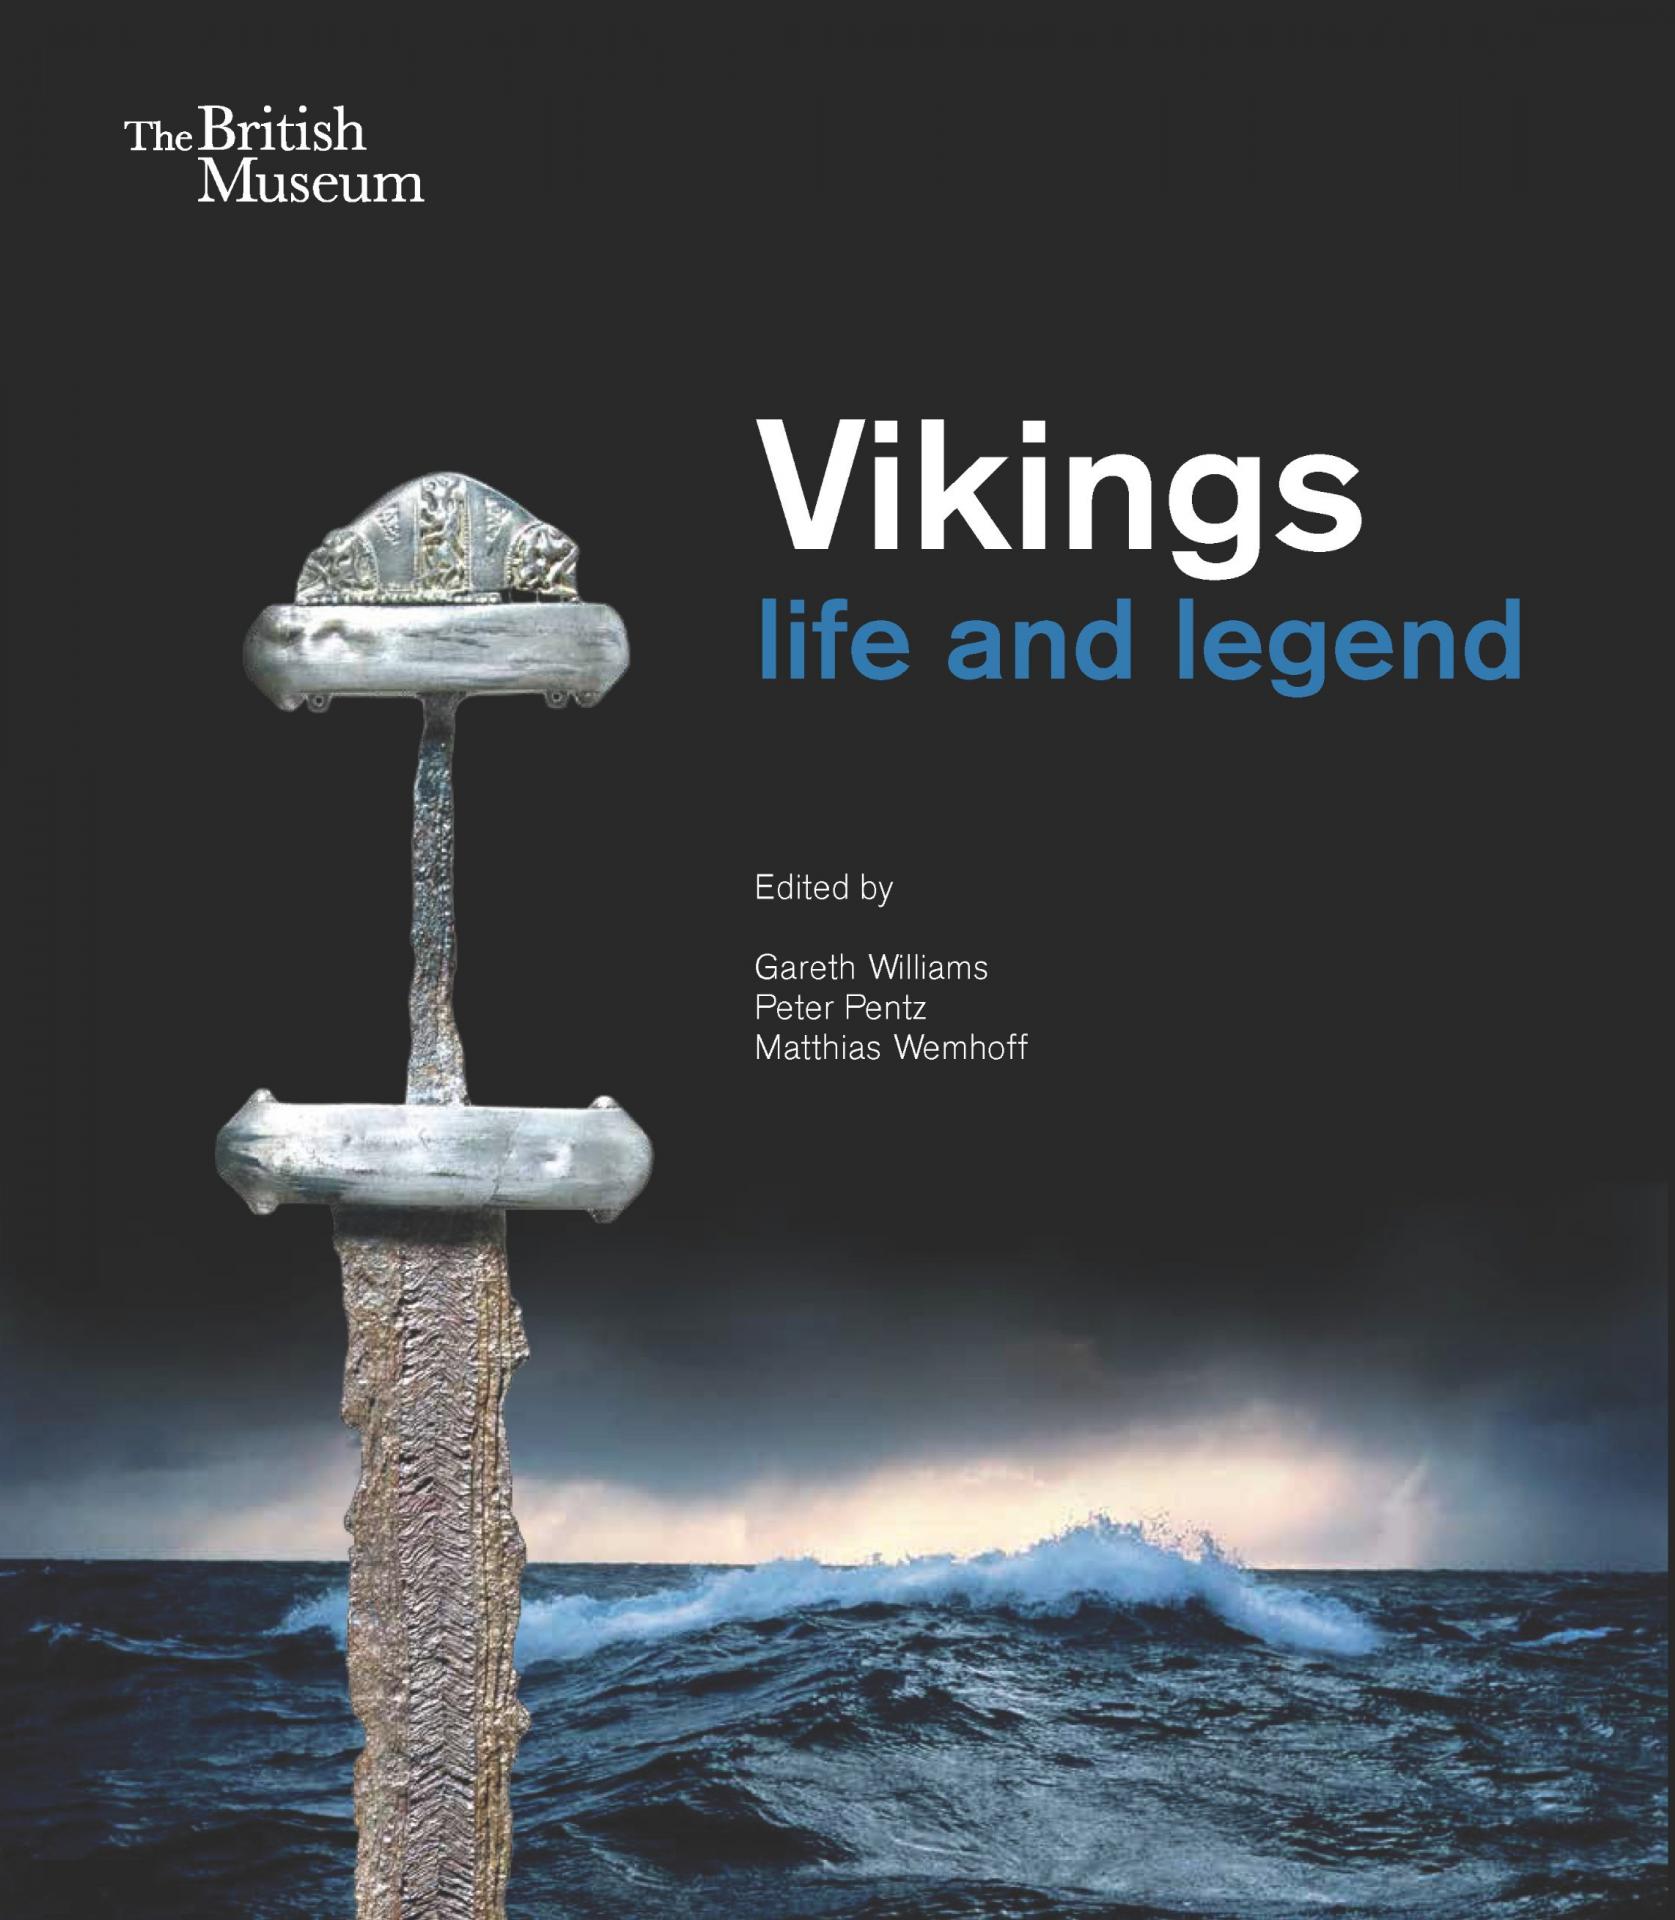 Catálogo de la exposición "Vikingos: vida y leyenda", British Museum. Londres, marzo, 2014